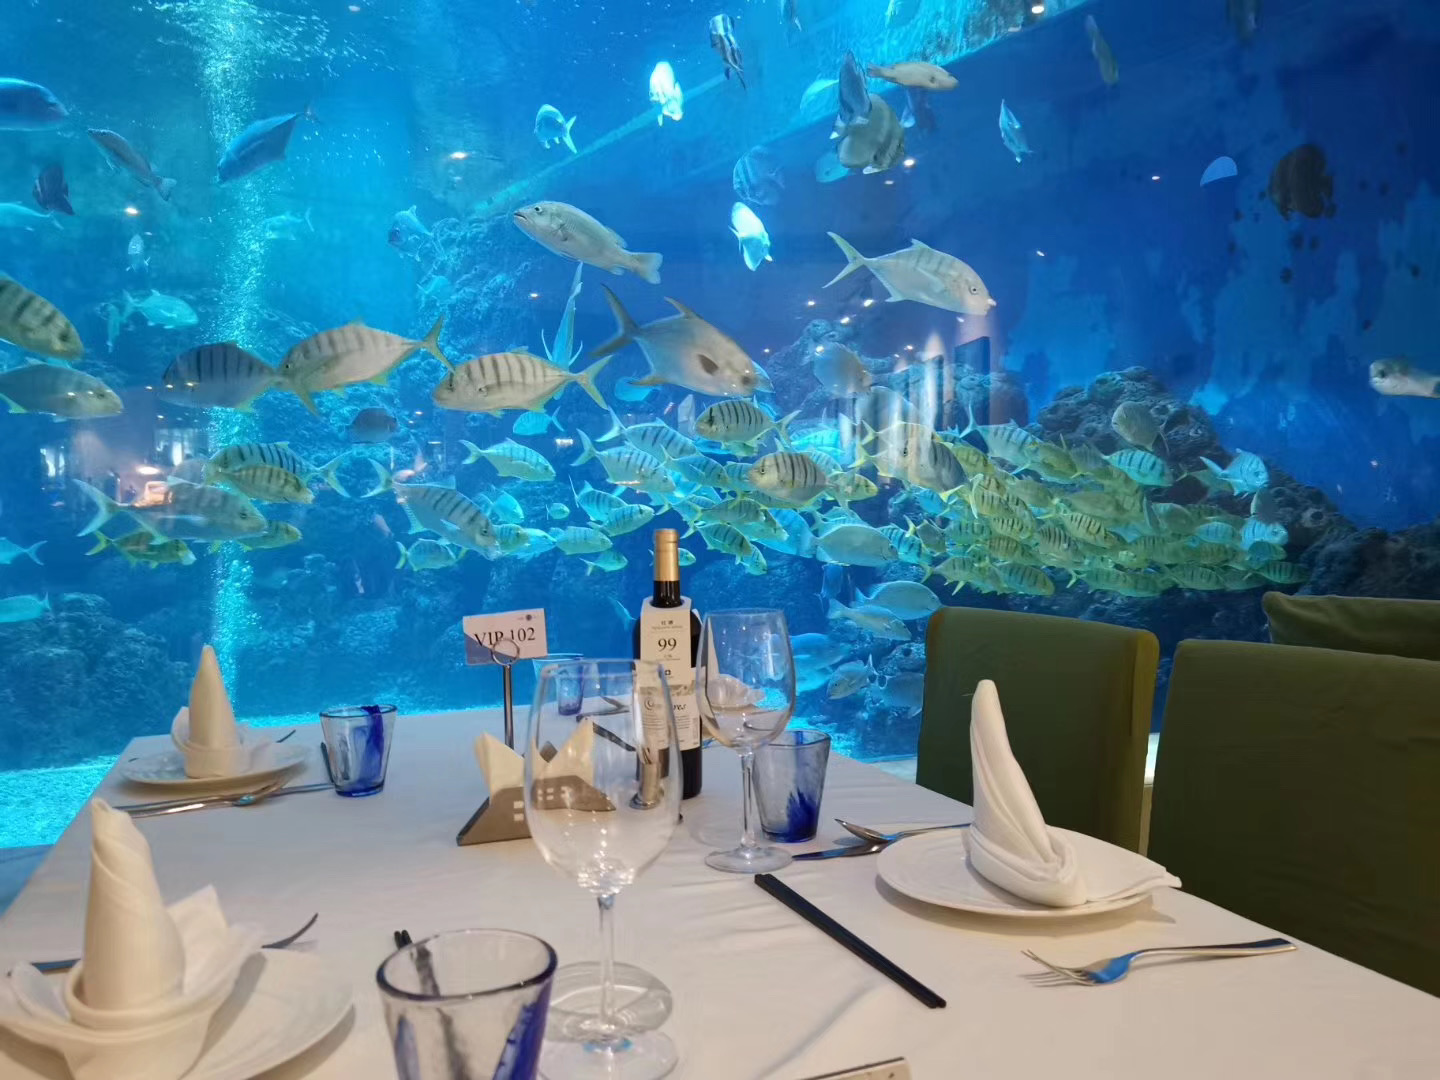 海洋主题海蓝餐厅(含边用餐边欣赏海底世界 晚餐潜水员喂鱼秀)· 三亚